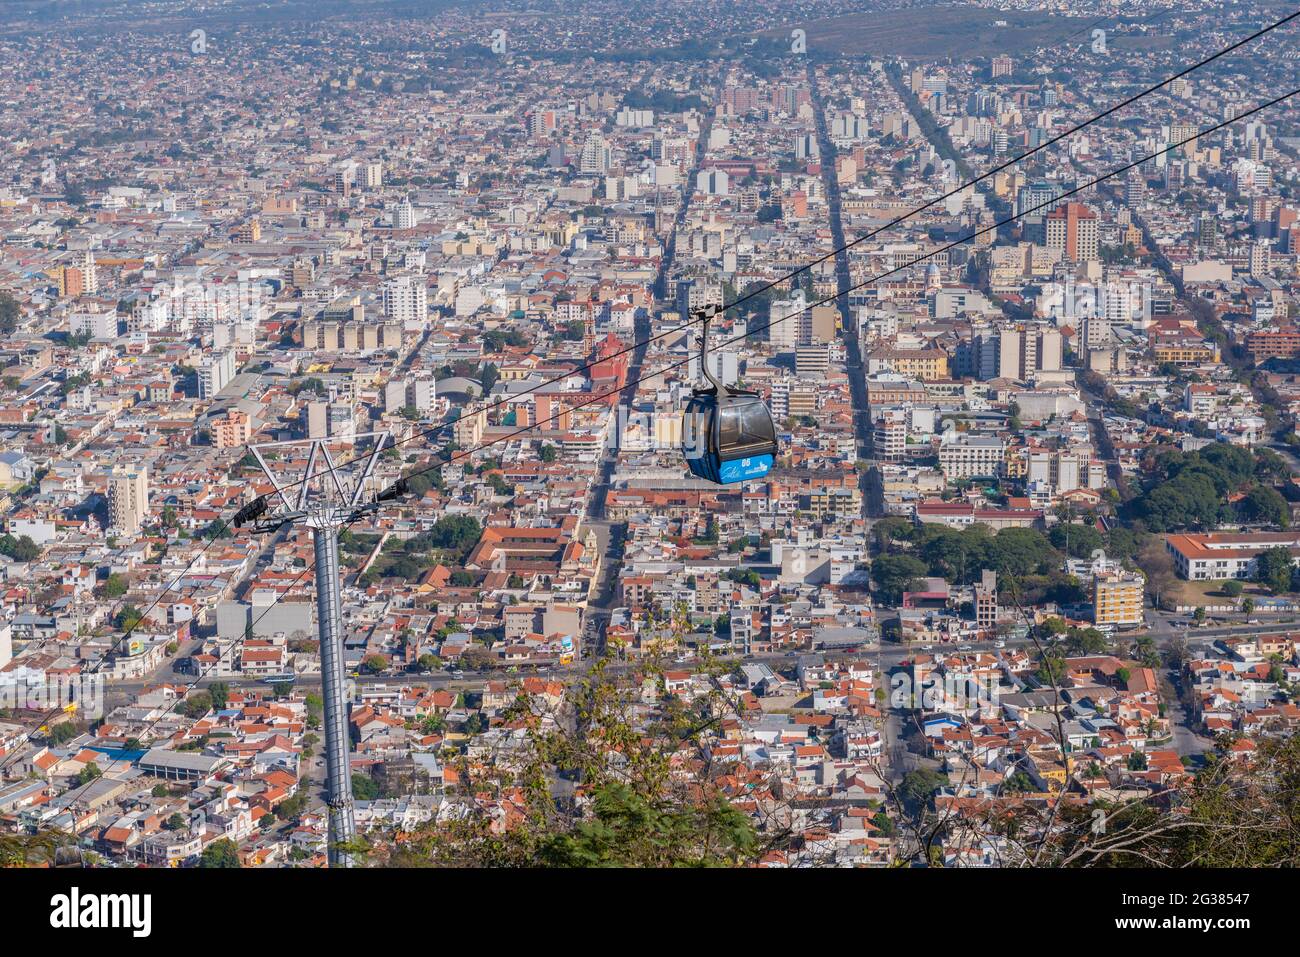 Vue de la colline Cerro San Bernardo, Teleferico San Bernado , ville coloniale de Salta dans le nord-ouest de l'Argentine, Amérique latine Banque D'Images